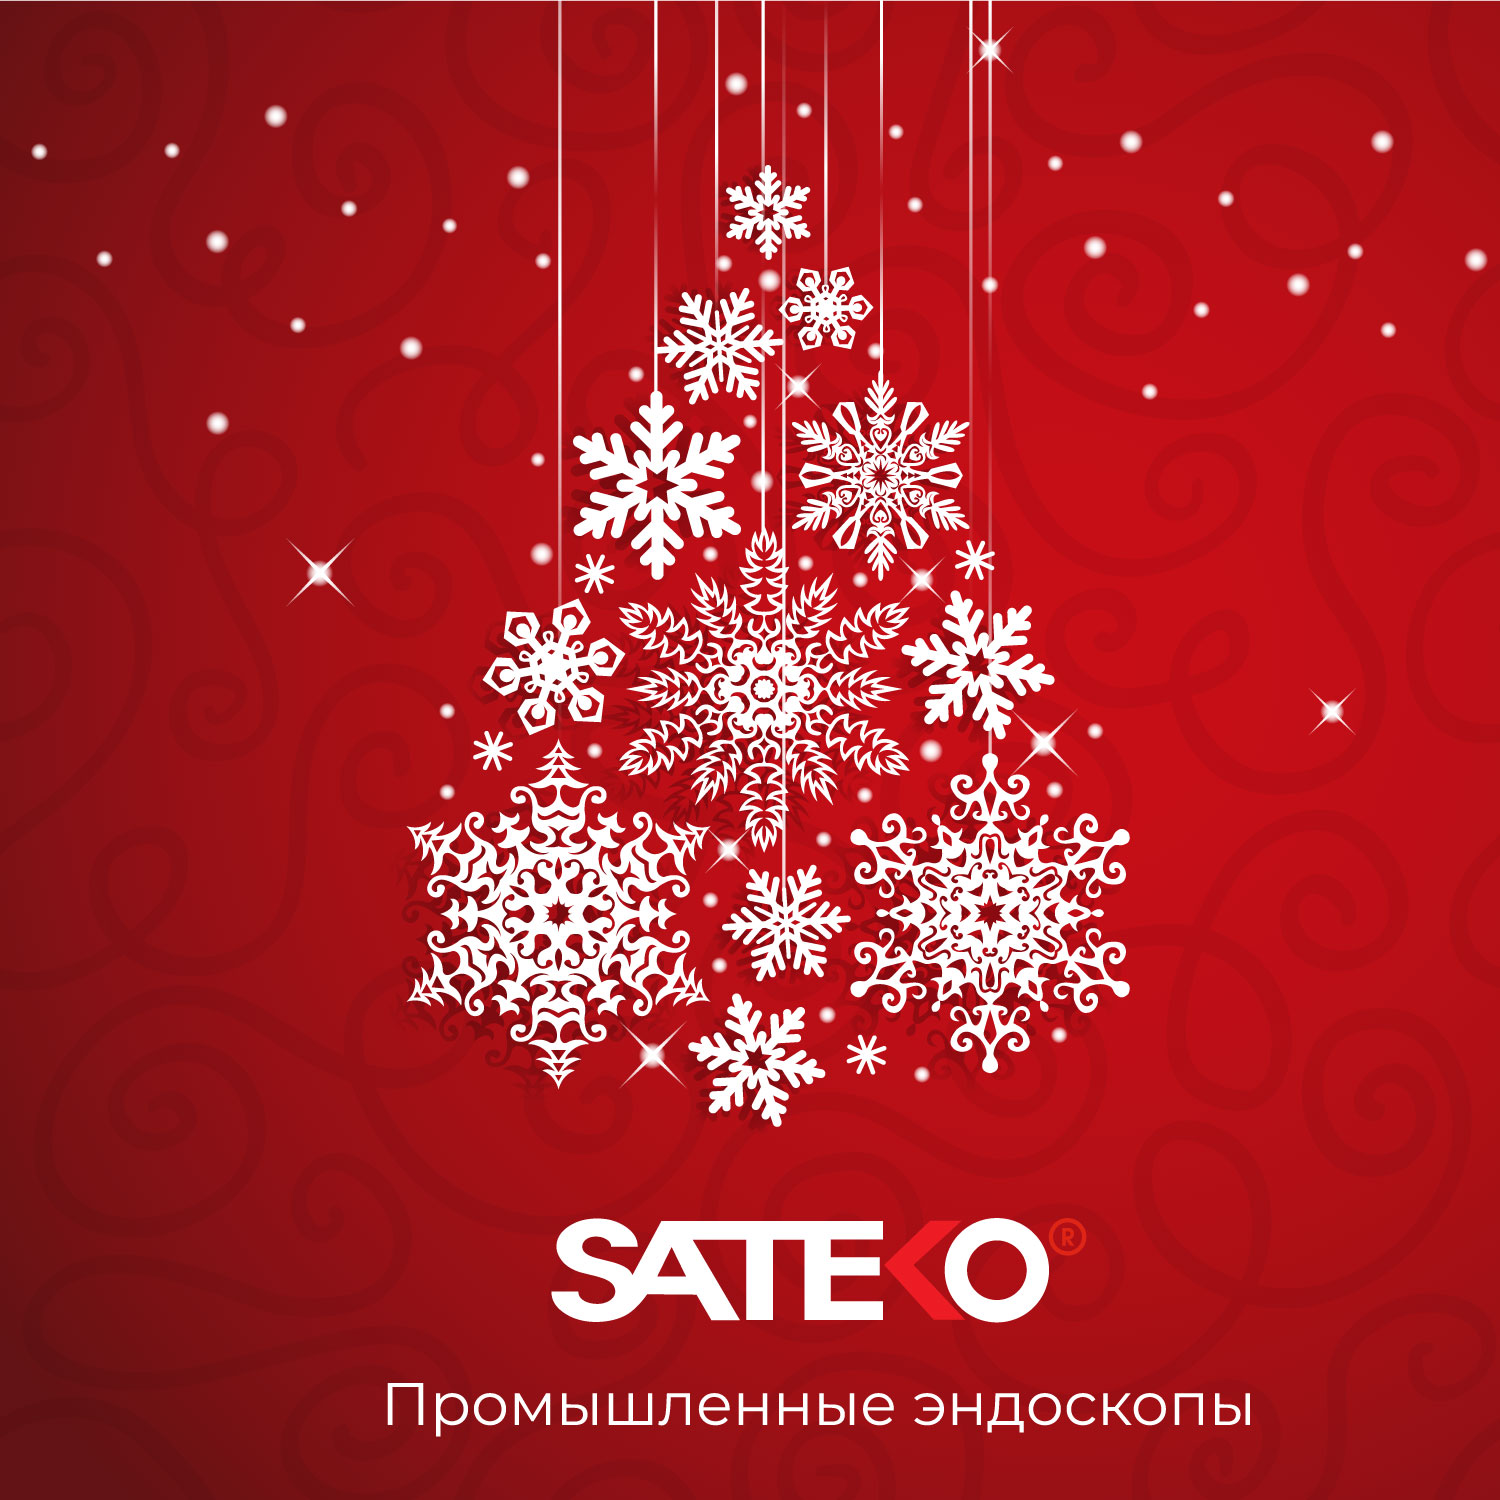 SATEKO поздравляет с Новым годом!